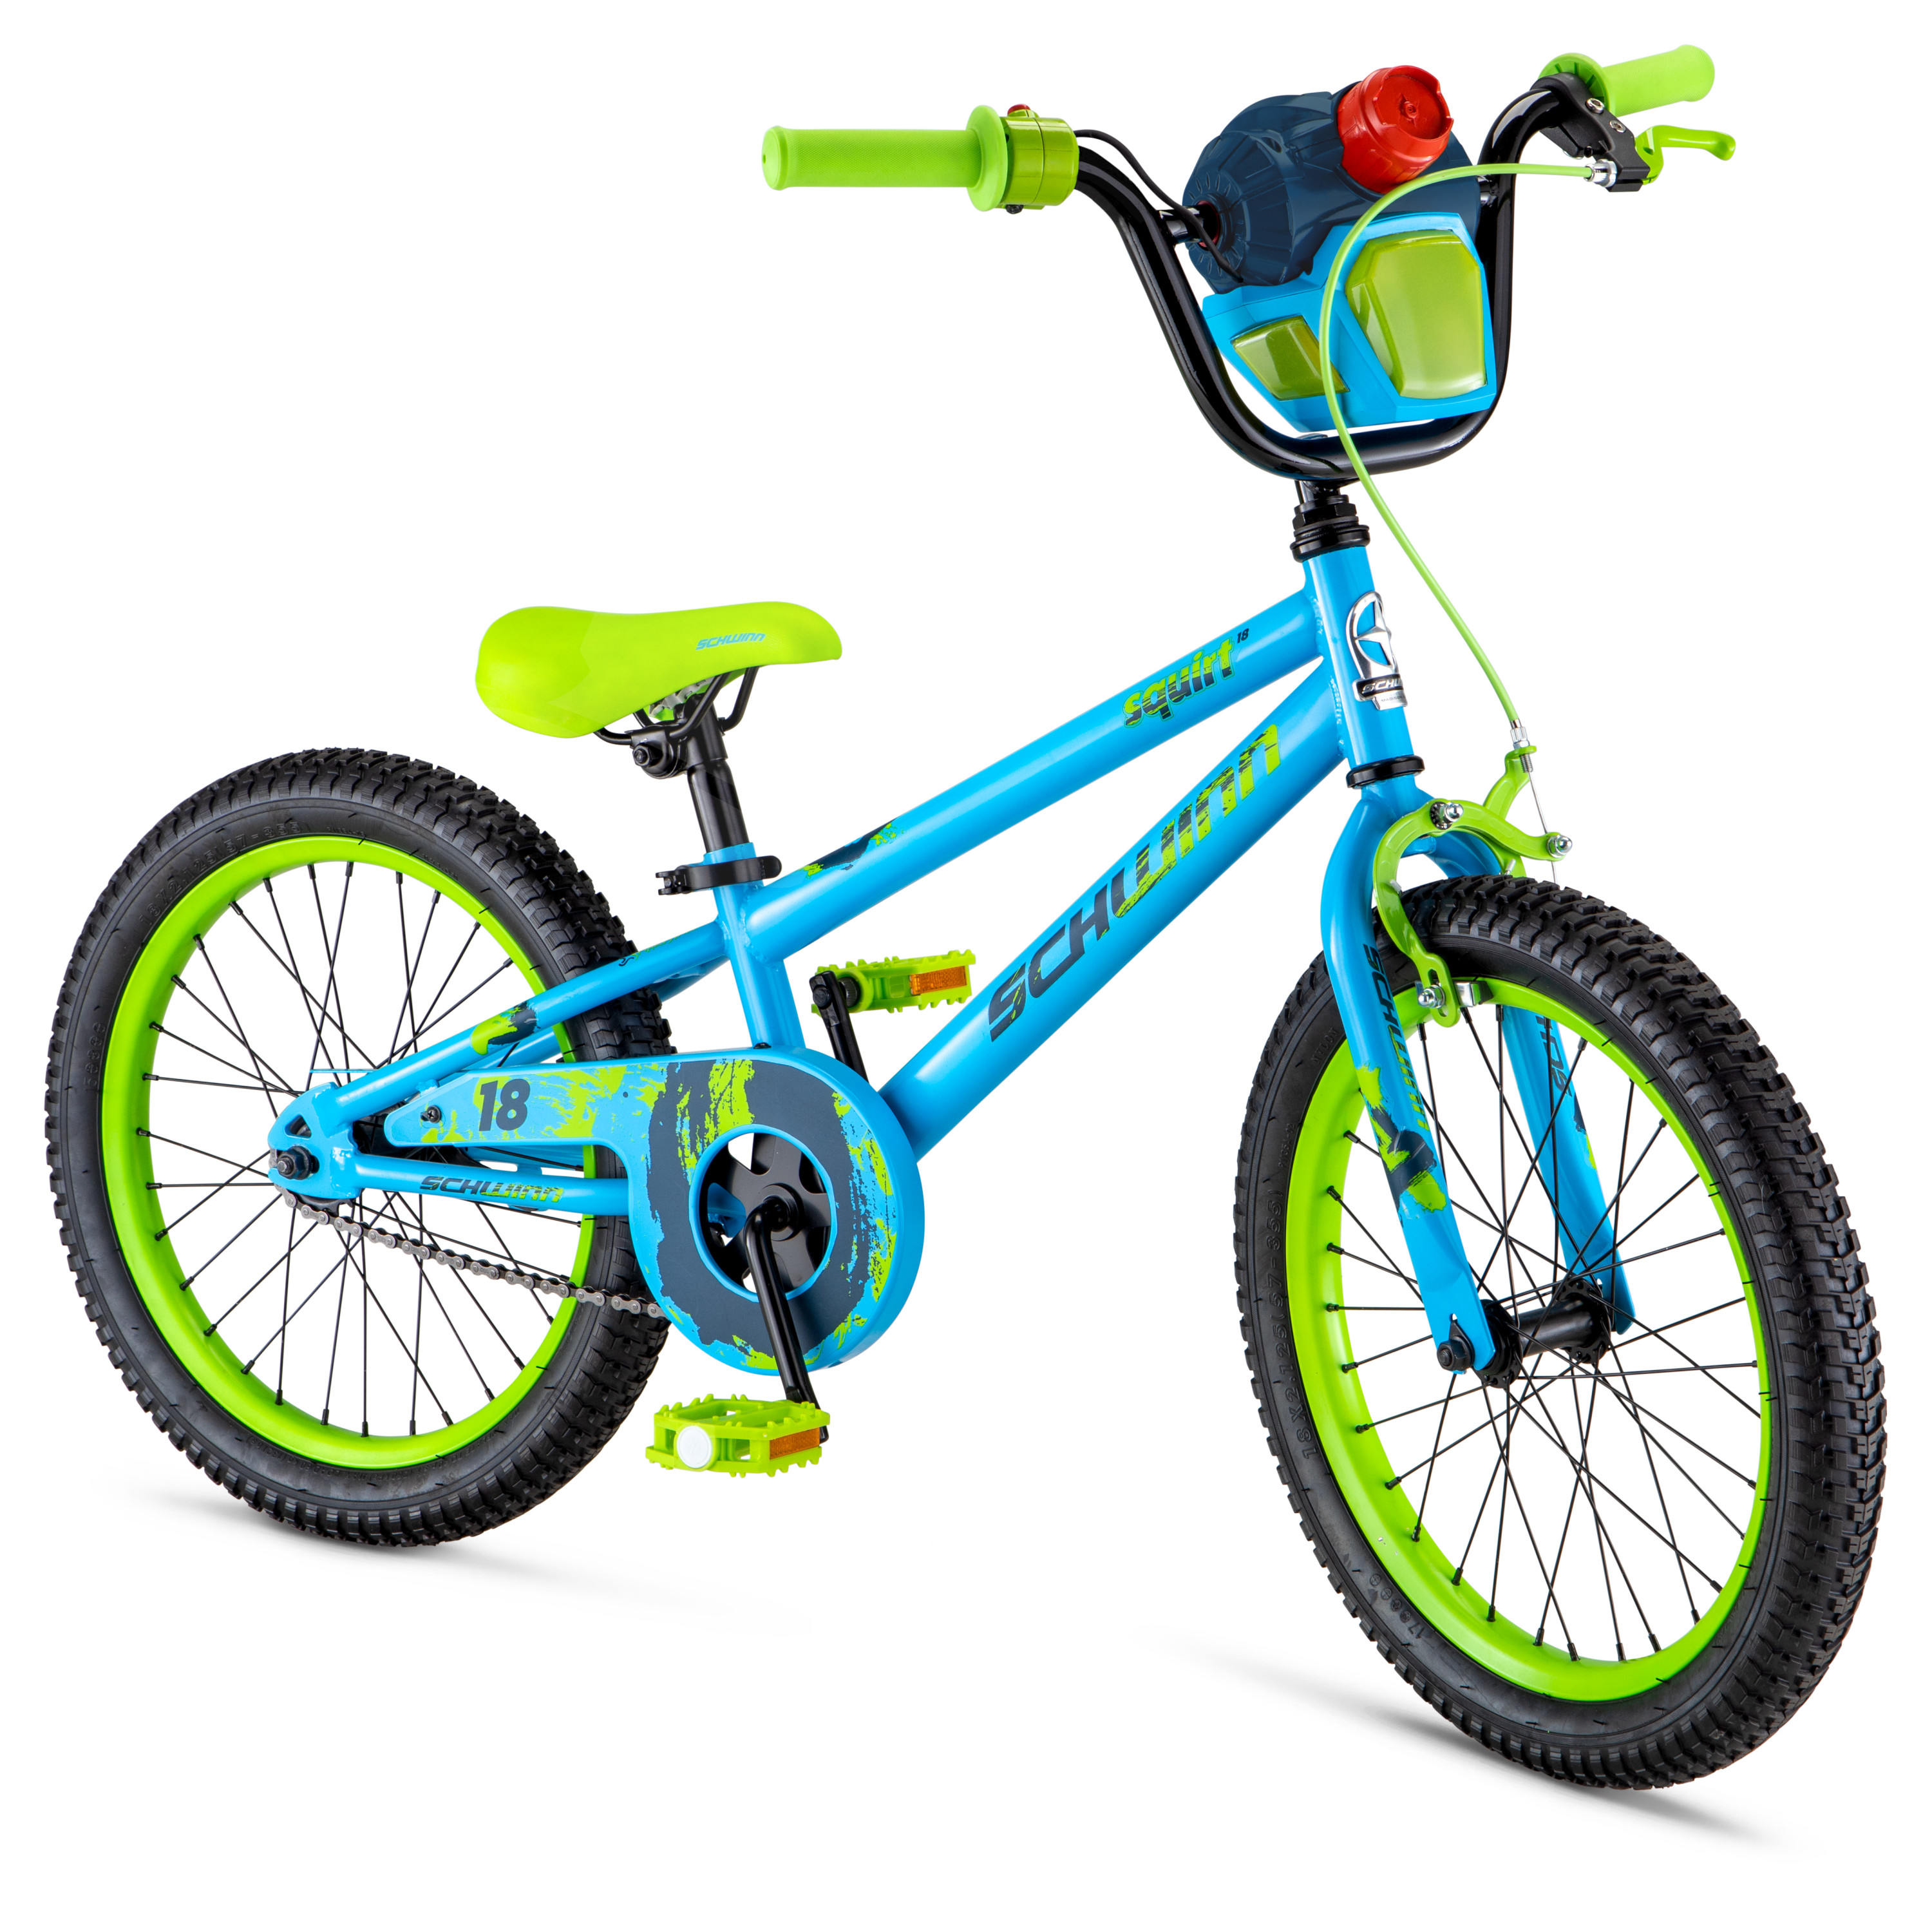 Schwinn Squirt Sidewalk Bike for Kids, 18-inch Wheels, Blue and Green - image 1 of 8